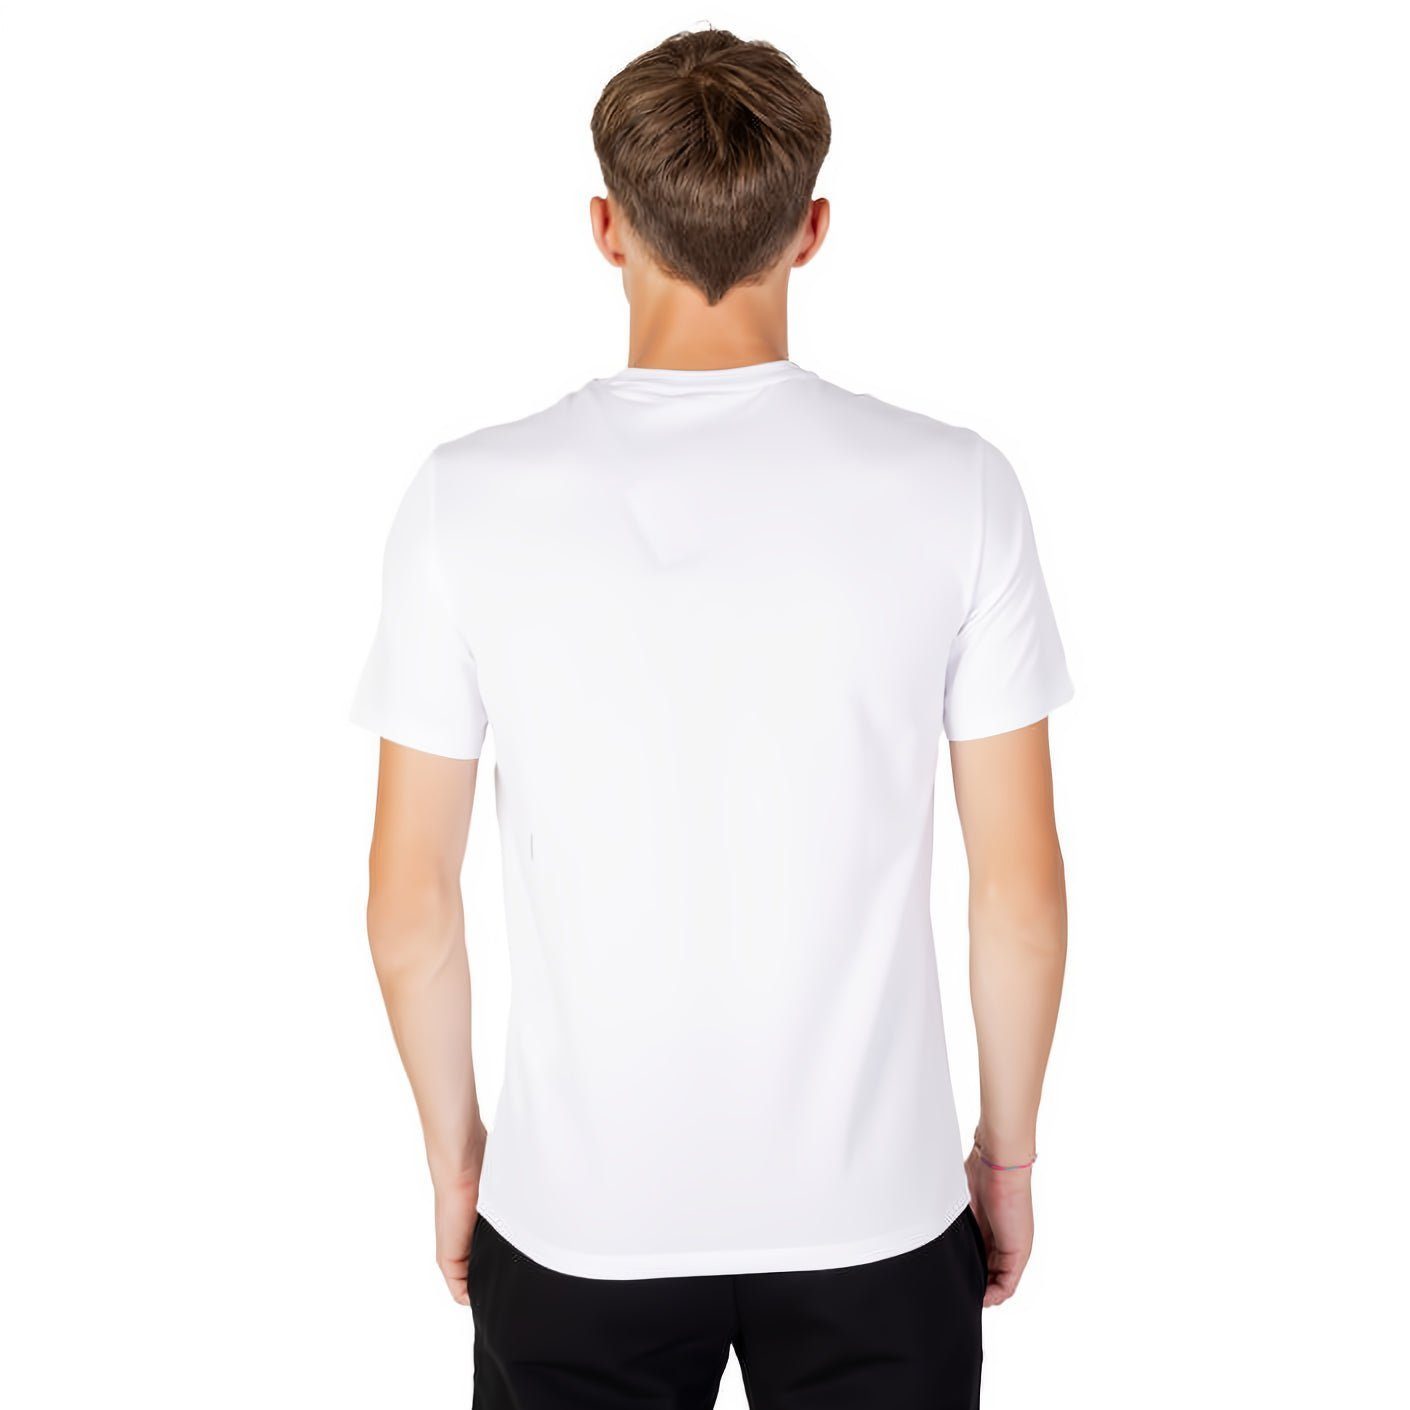 ARMANI EXCHANGE T-Shirt ein kurzarm, Ihre für Must-Have Rundhals, Kleidungskollektion